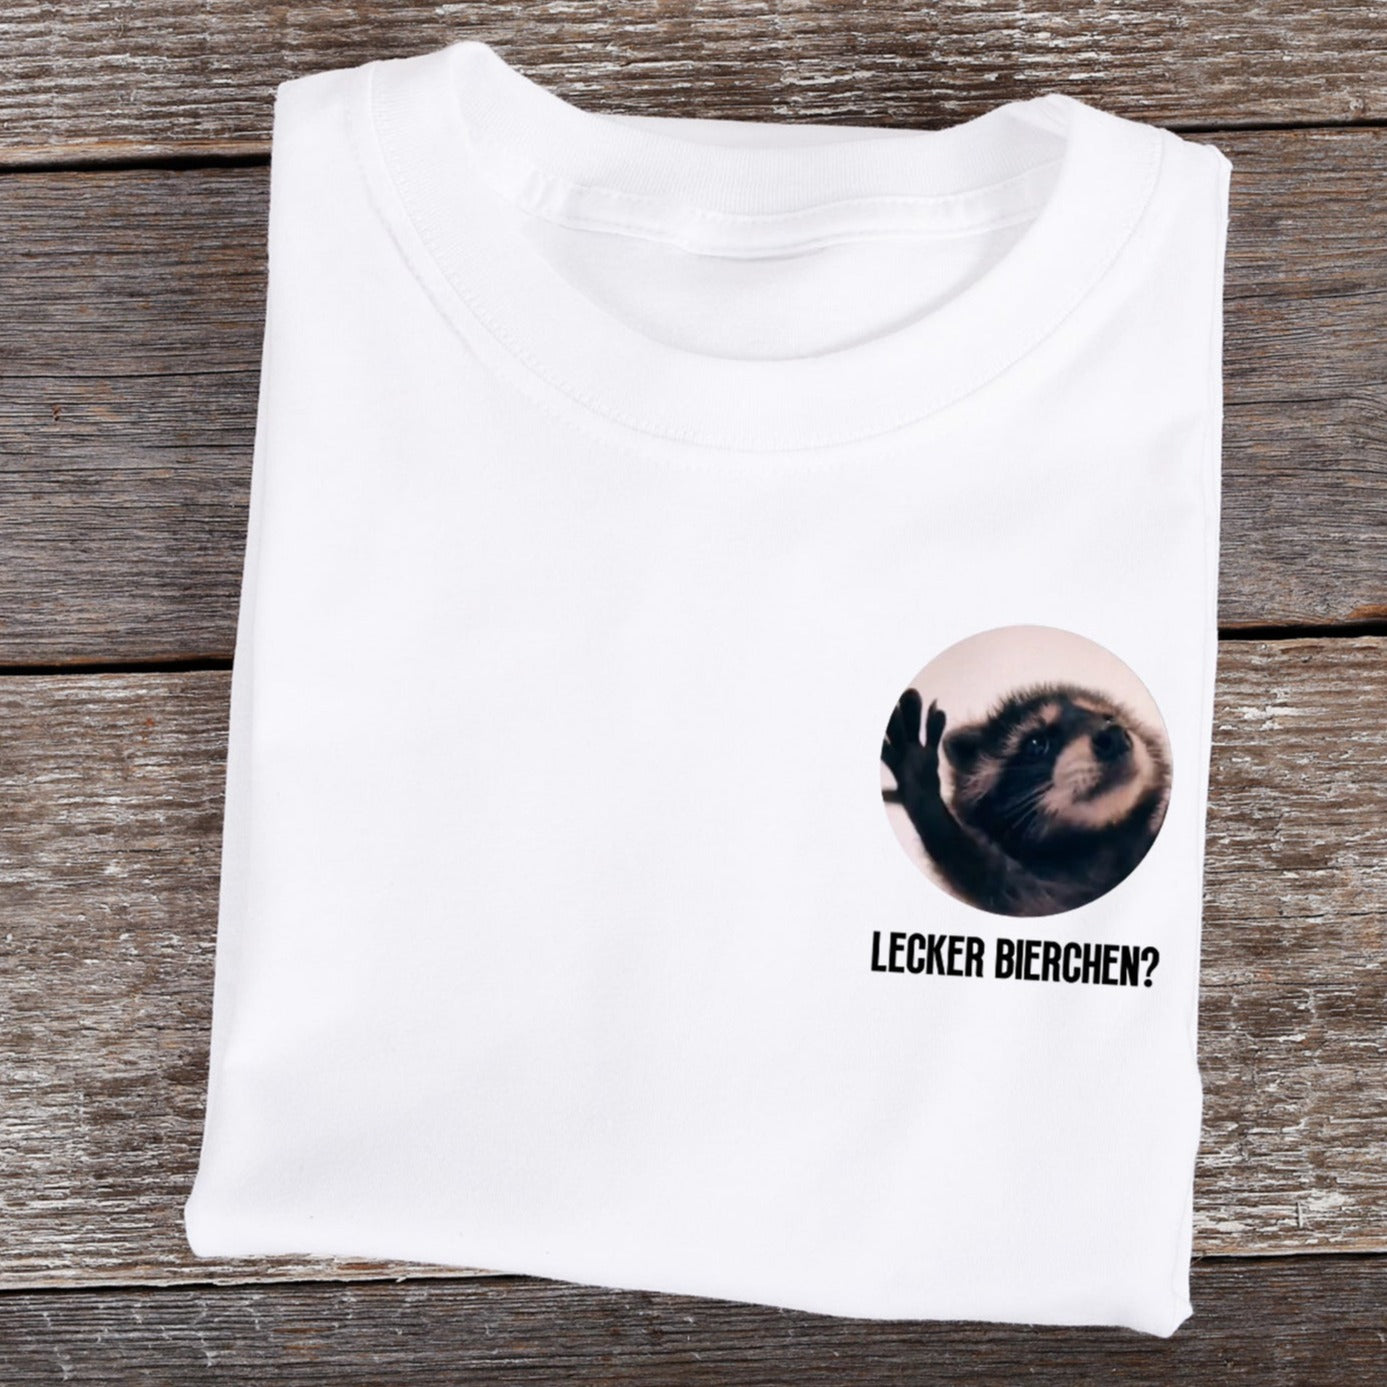 LECKER BIERCHEN PEDRO LOGO - Premium Shirt